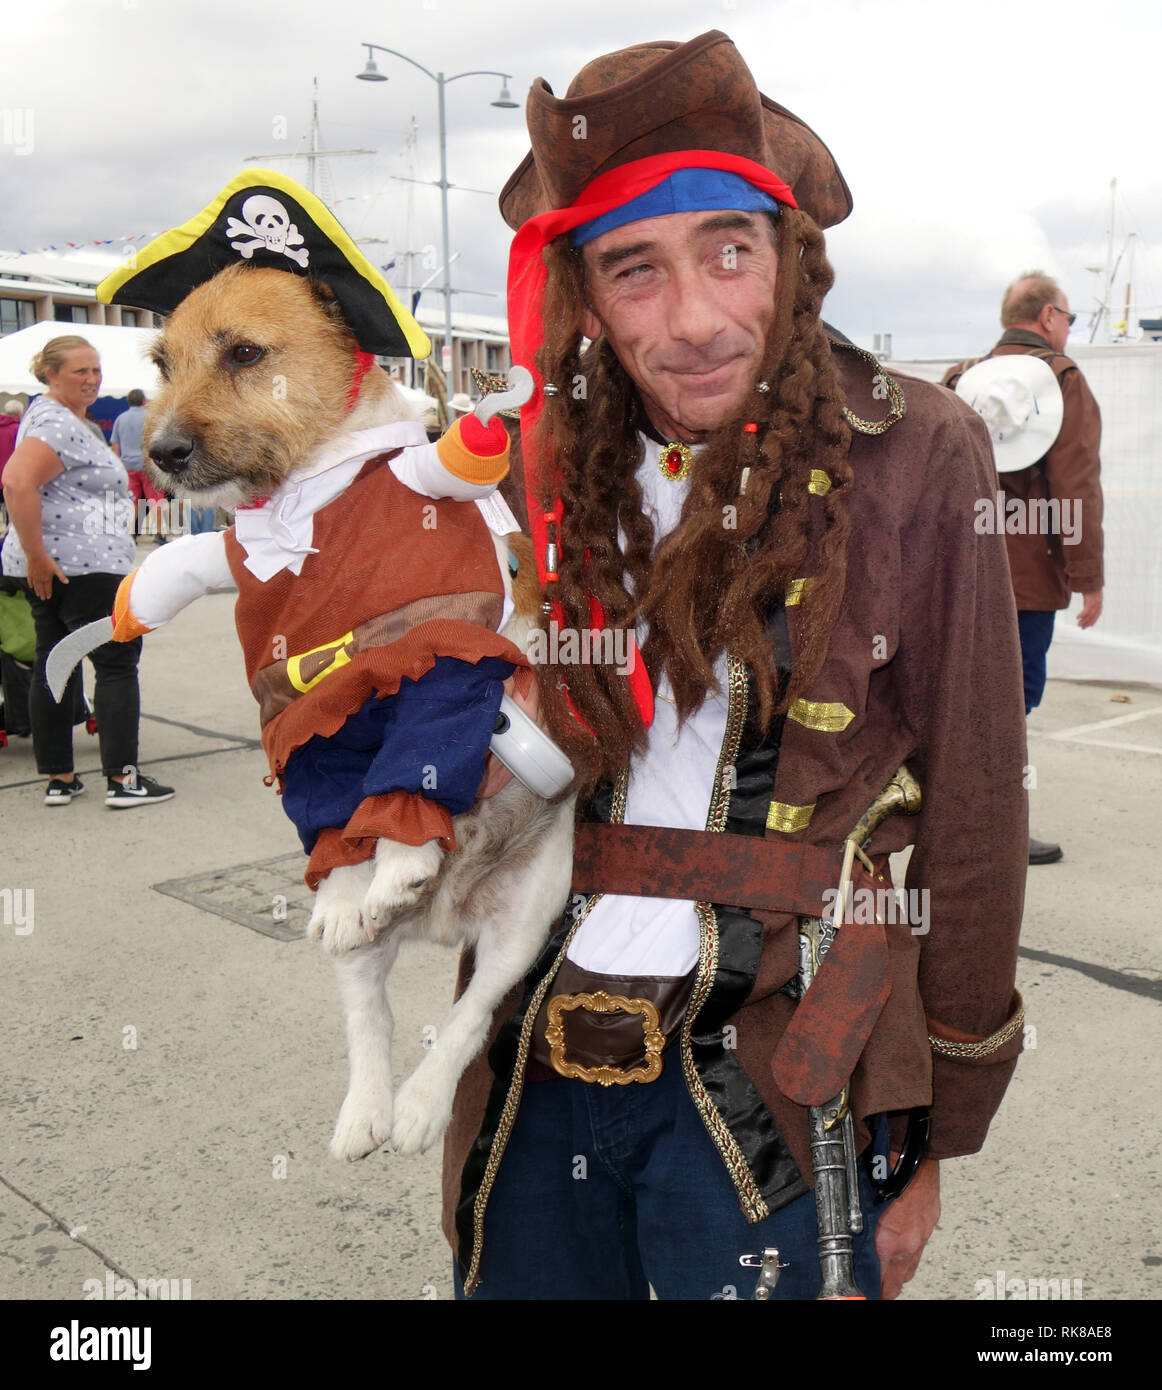 Pirate avec son chien qui est également en costume de pirate, bateau en bois australien 2019 Festival, Hobart, Tasmanie, Australie. Pas de monsieur Banque D'Images